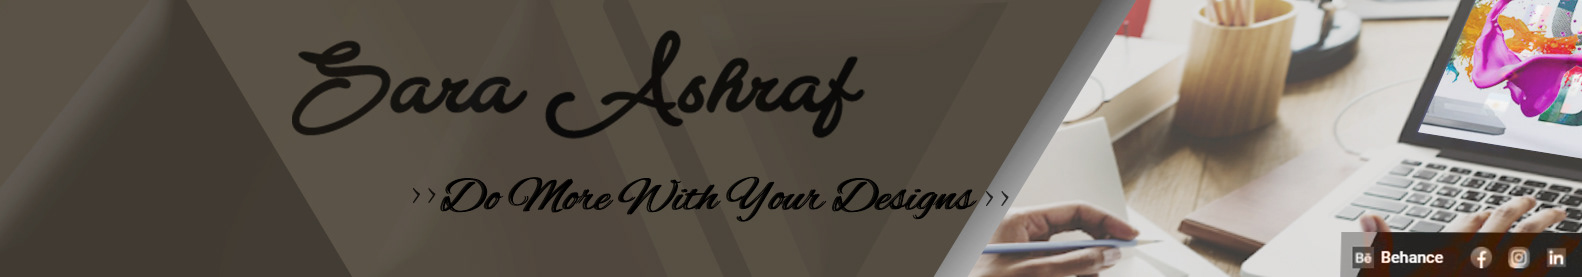 Profil-Banner von Sara Ashraf